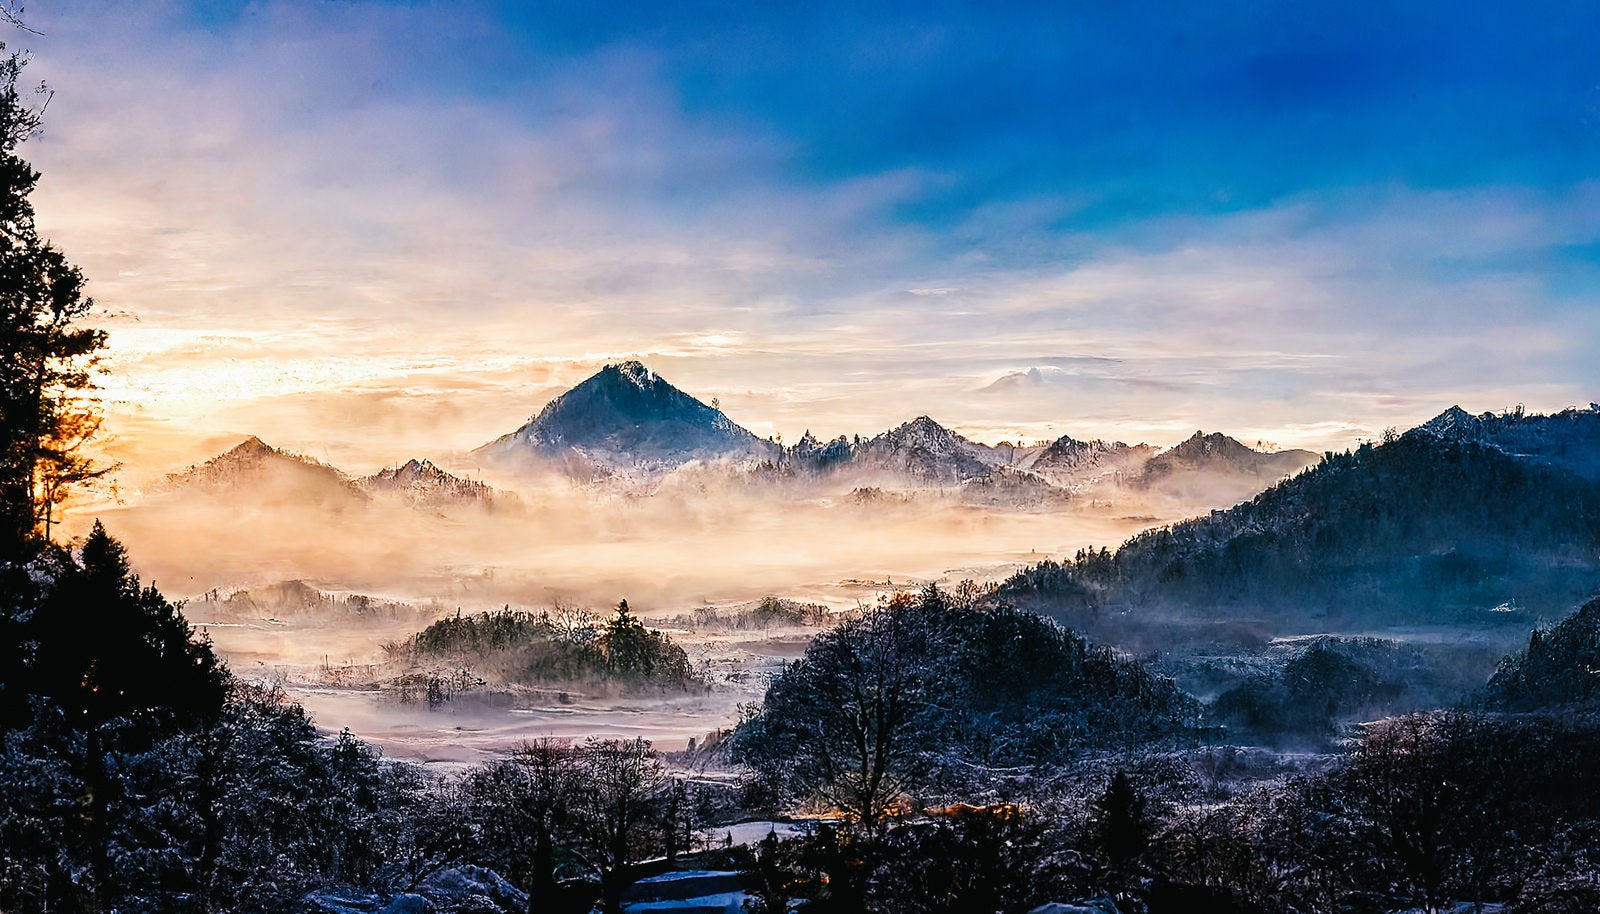 「朝霧が漂う雪山」の写真